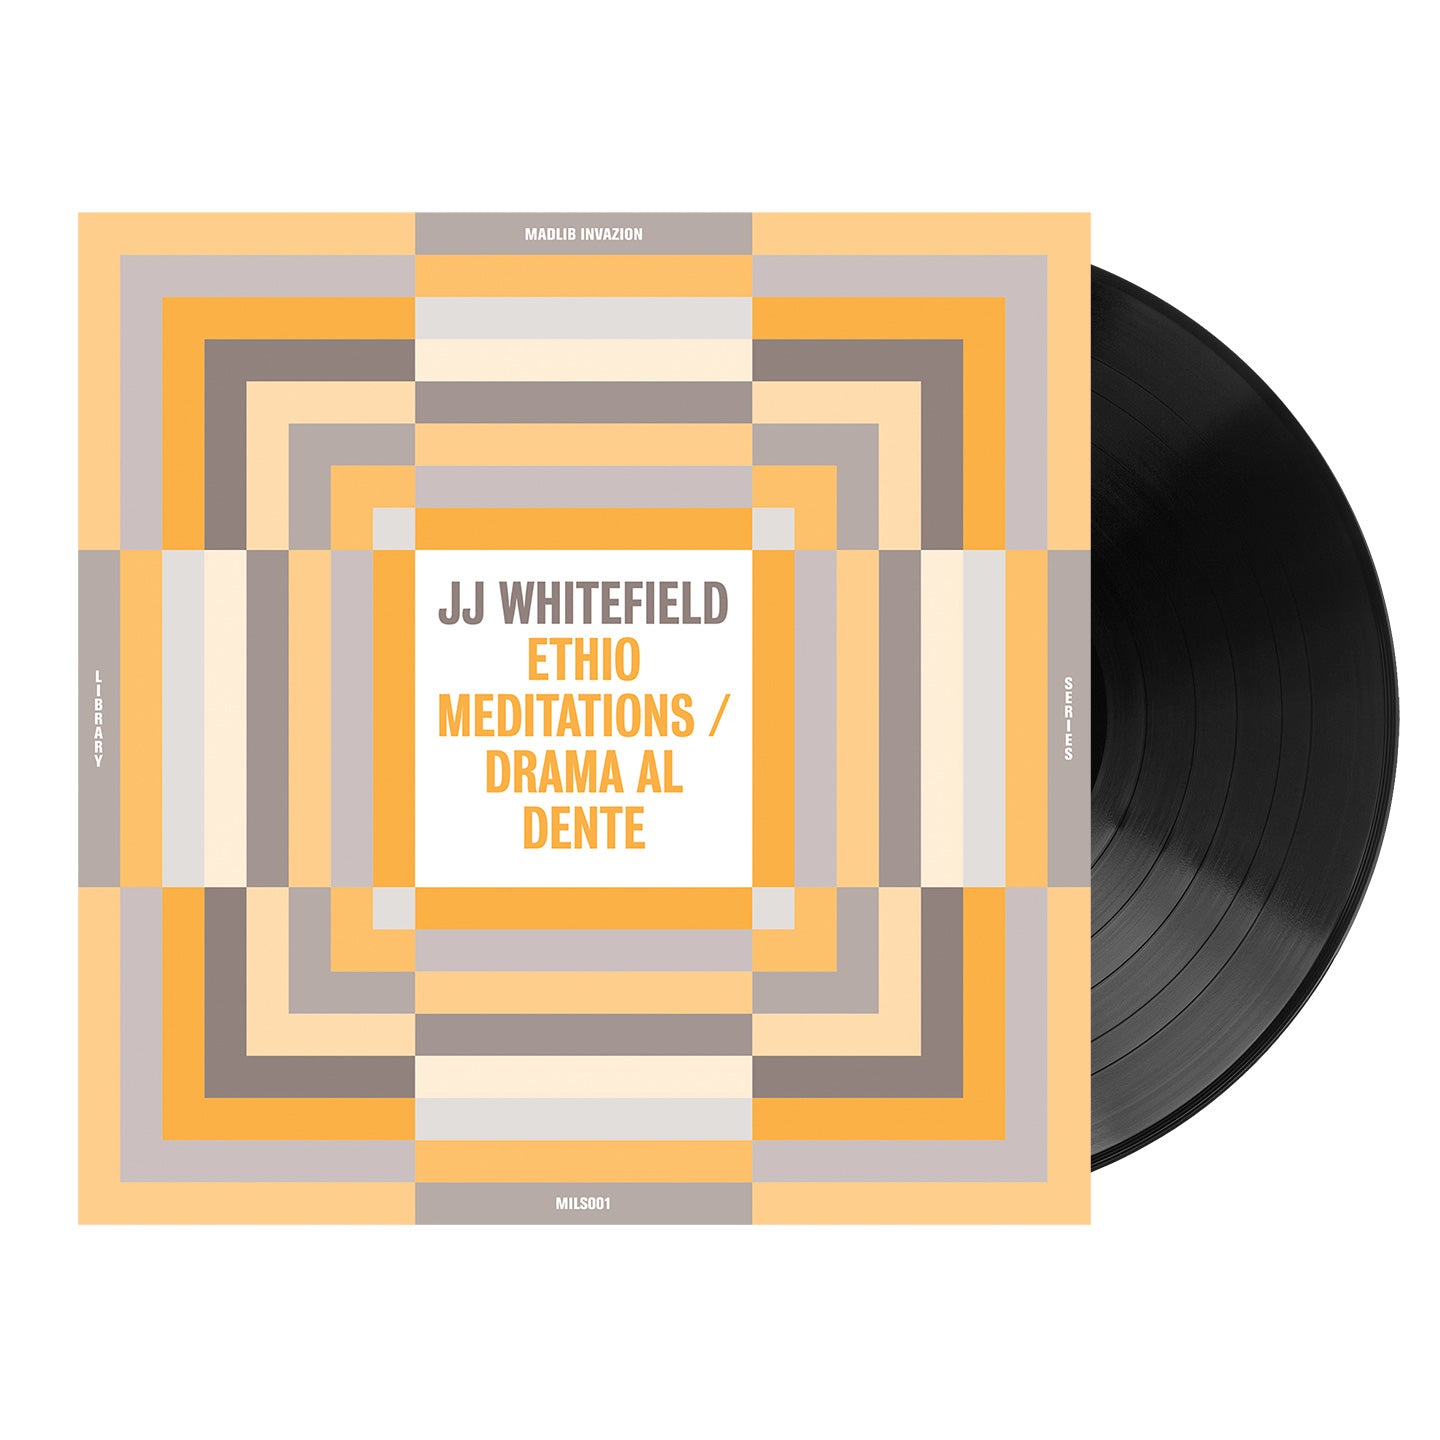 JJ Whitefield - Ethio Meditations / Drama Al Dente (Madlib Invazion Music Library Series #1)